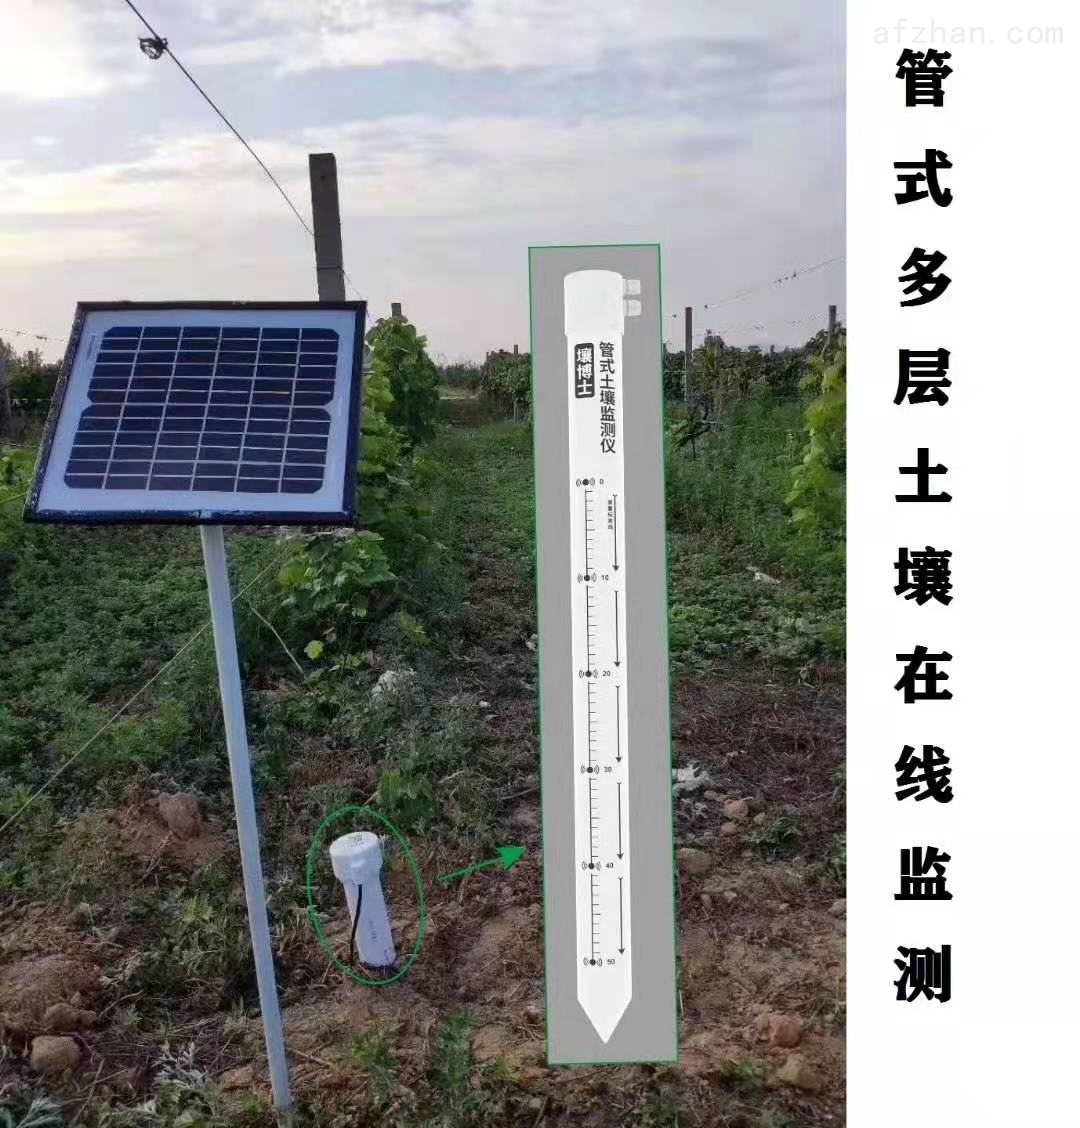 东胜饮用水检测检测单位-亚普环境检测